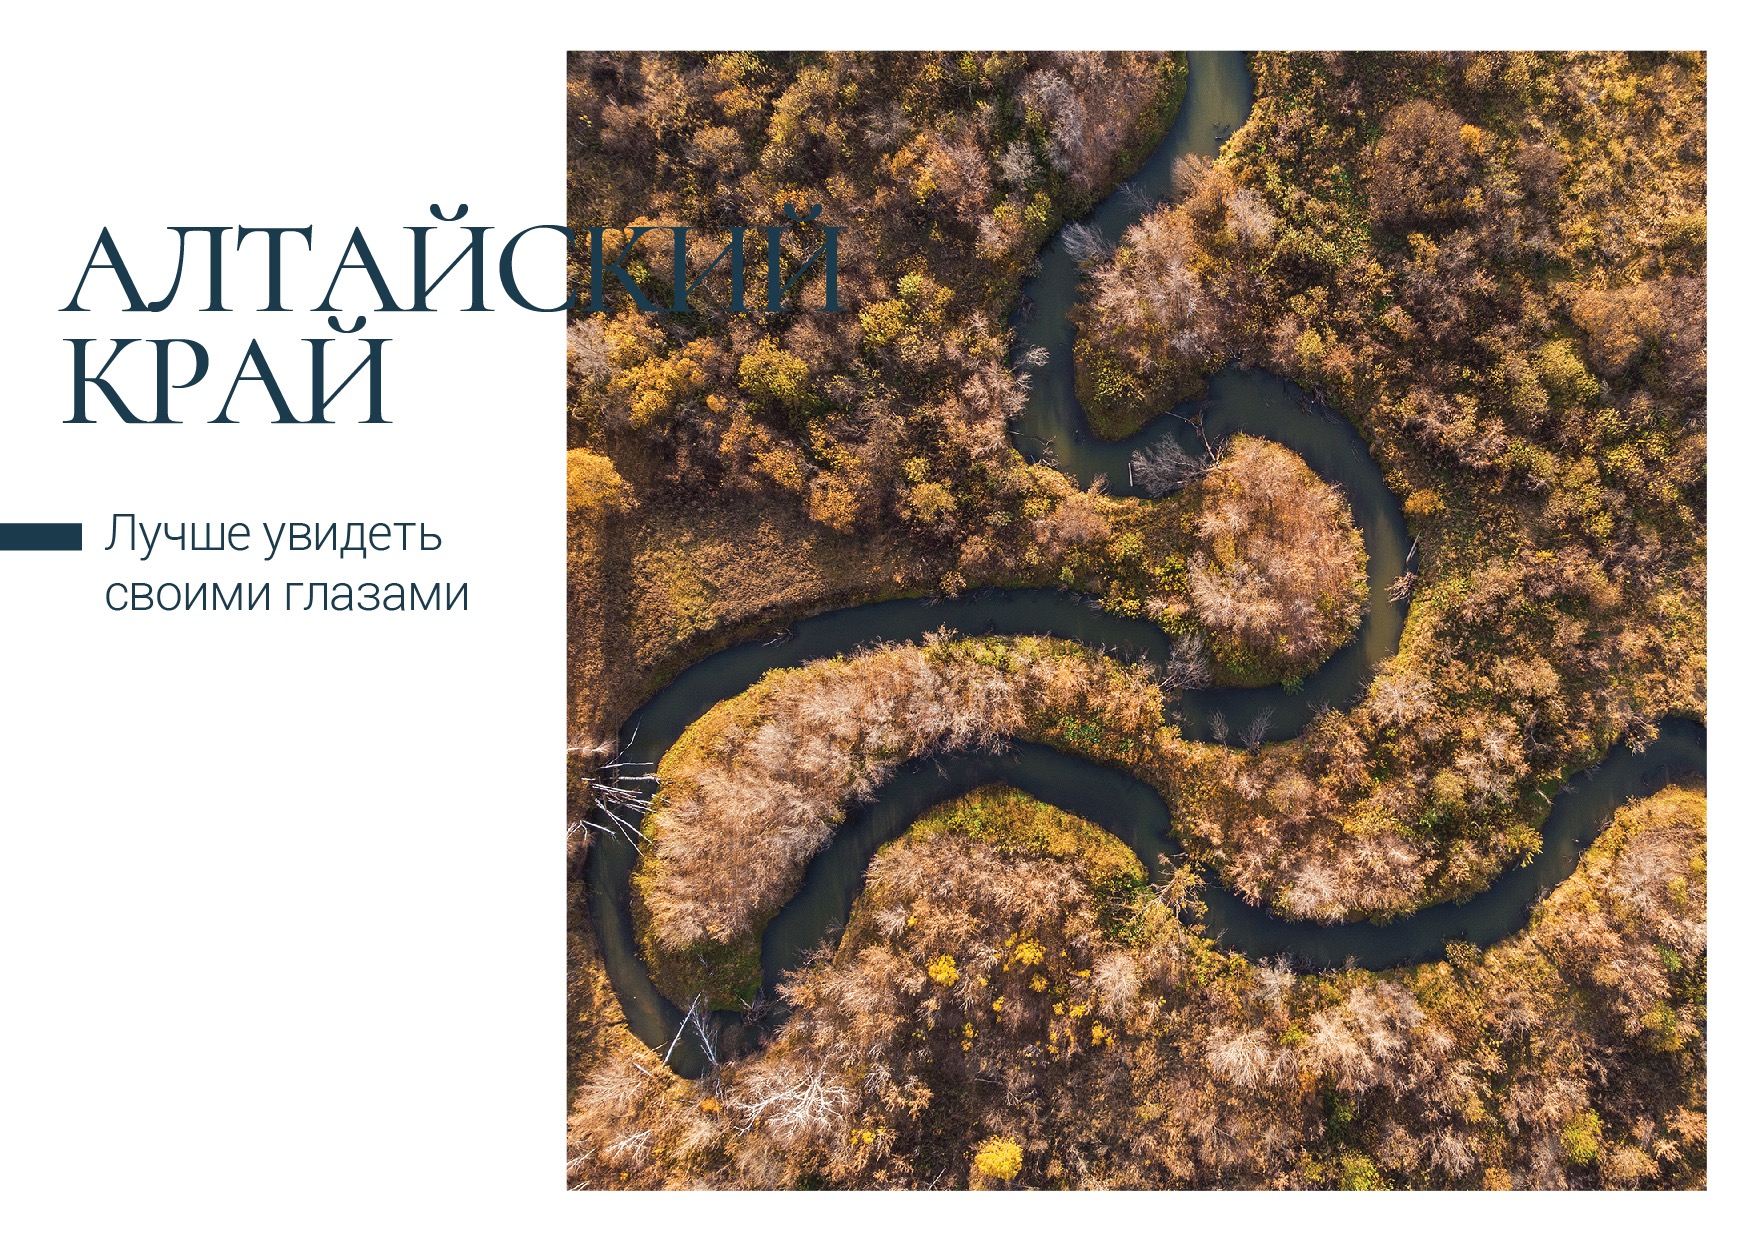 Достопримечательности Алтайского края попали на открытки из лимитированной серии Почты России